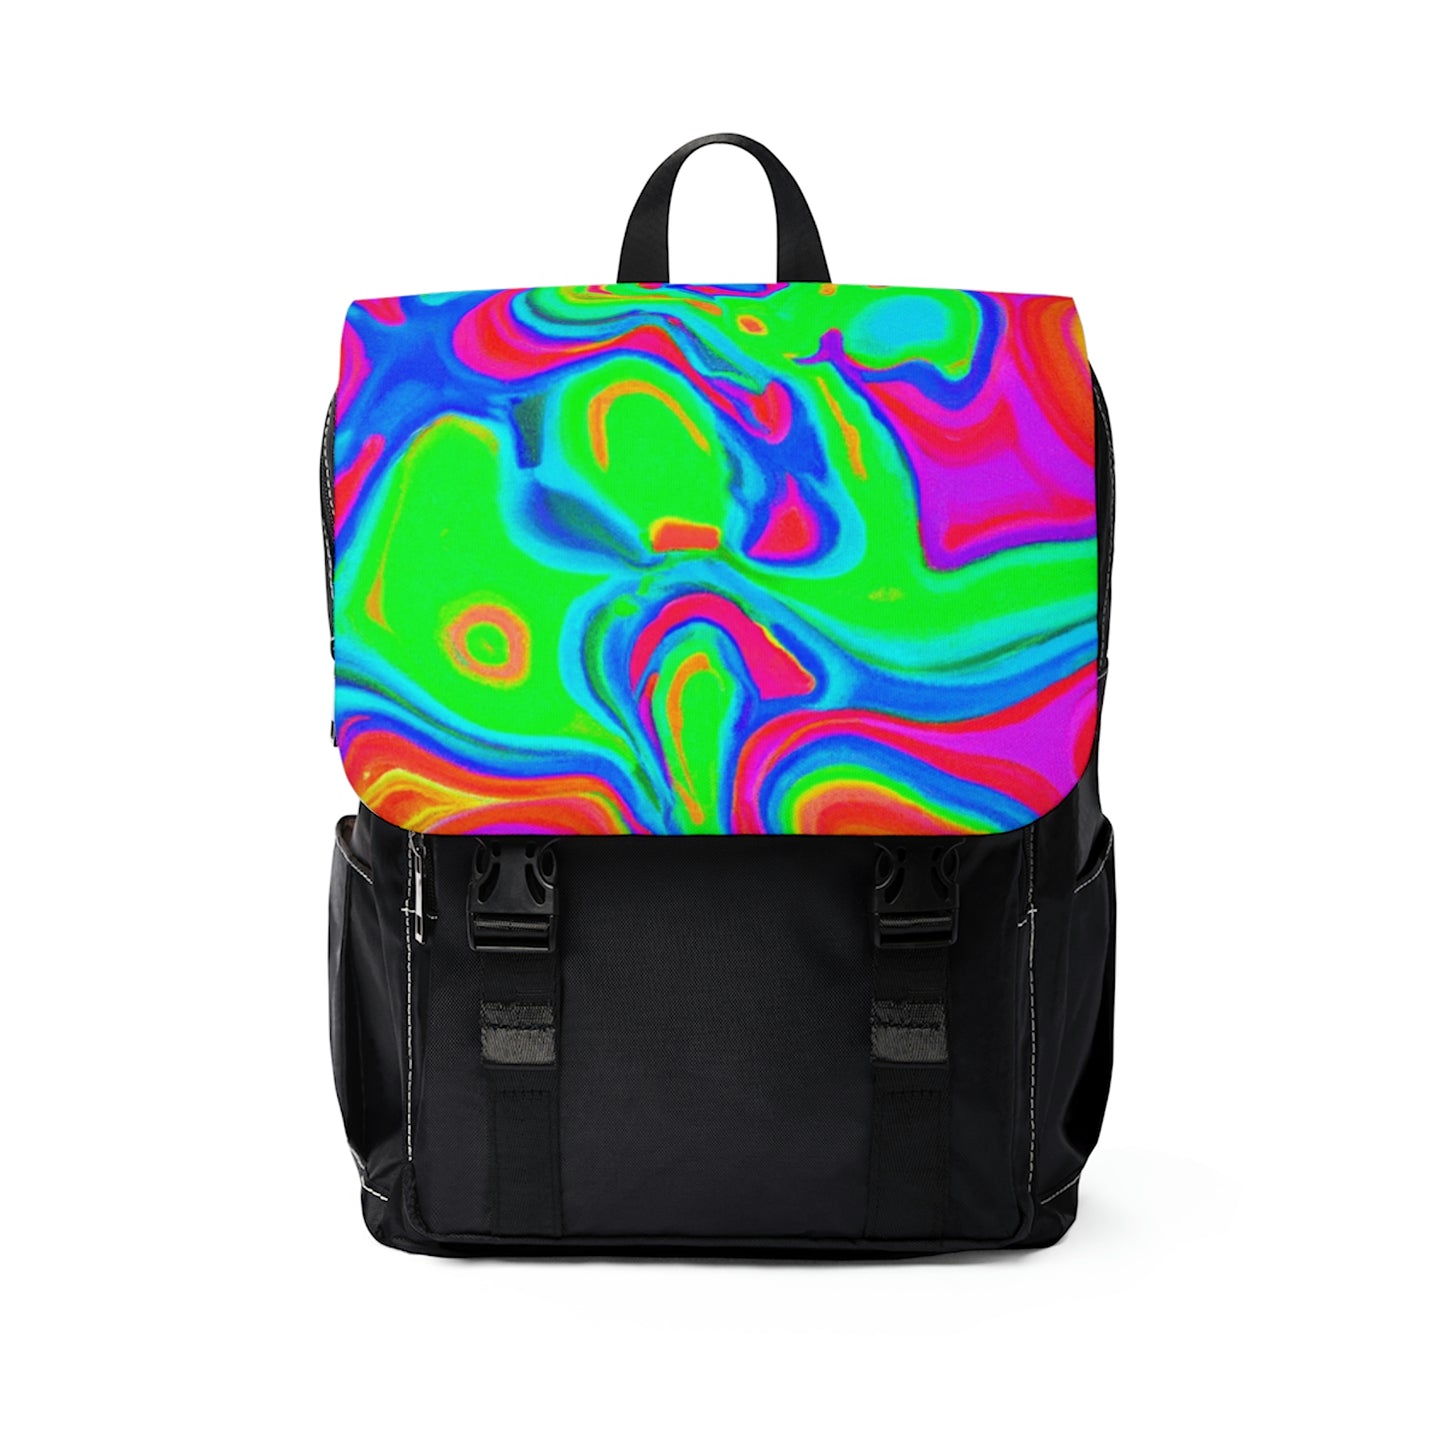 .

Giannaemma - Psychedelic Shoulder Travel Backpack Bag